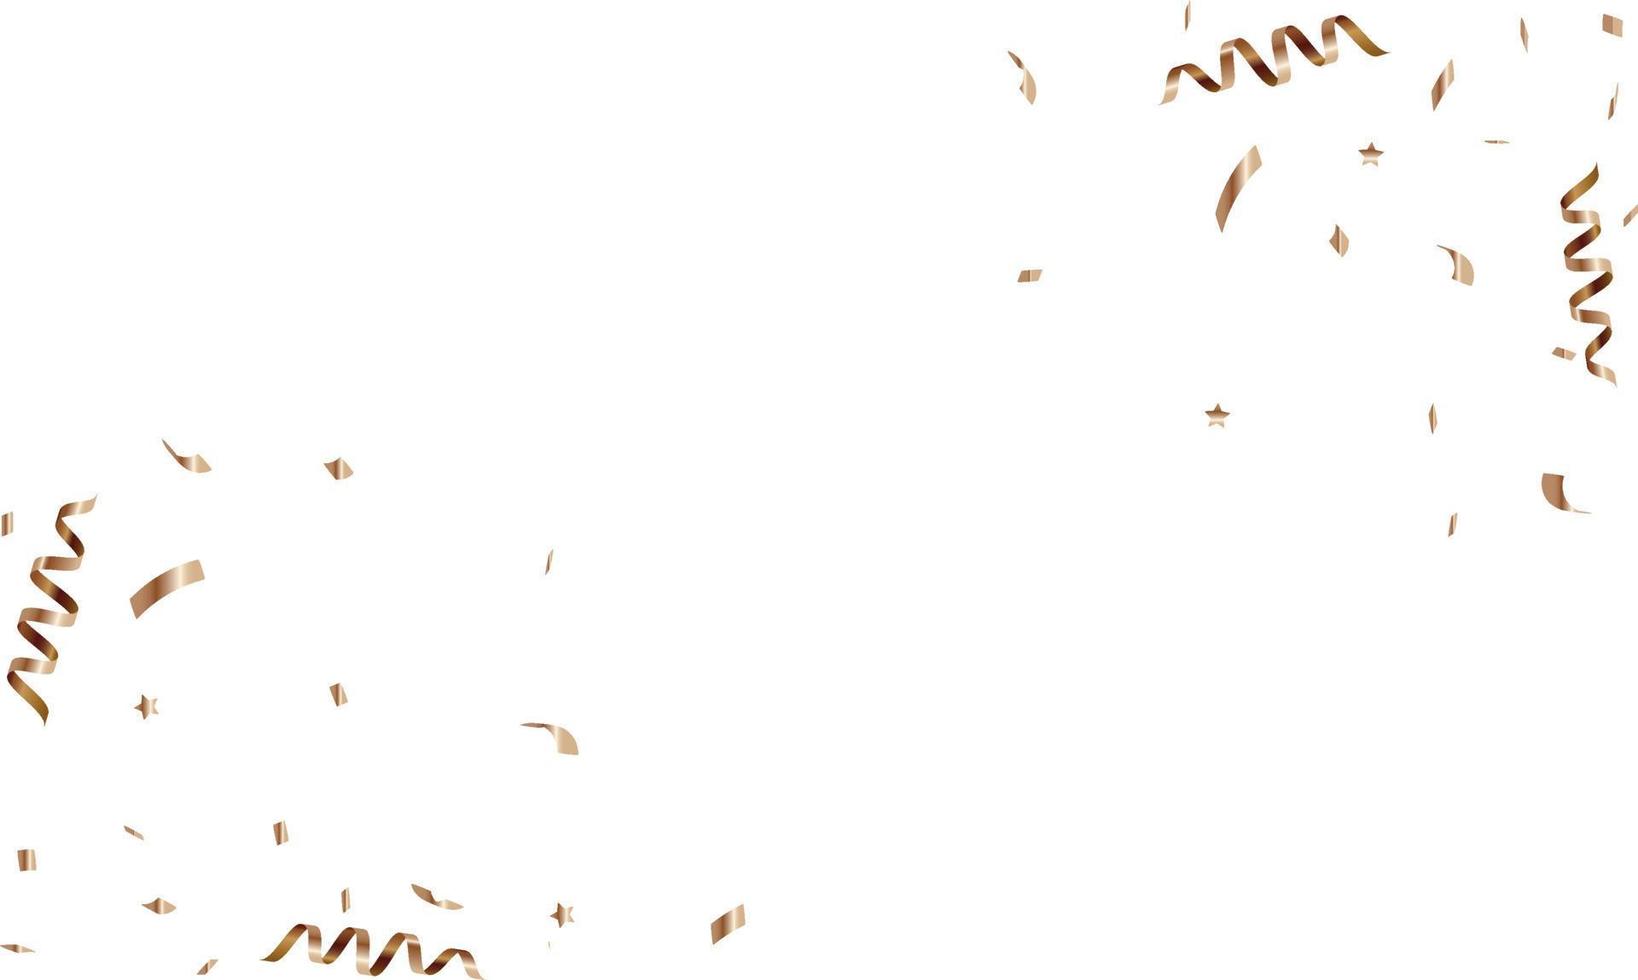 fond de félicitations avec des confettis dorés et de la serpentine. illustration vectorielle vecteur